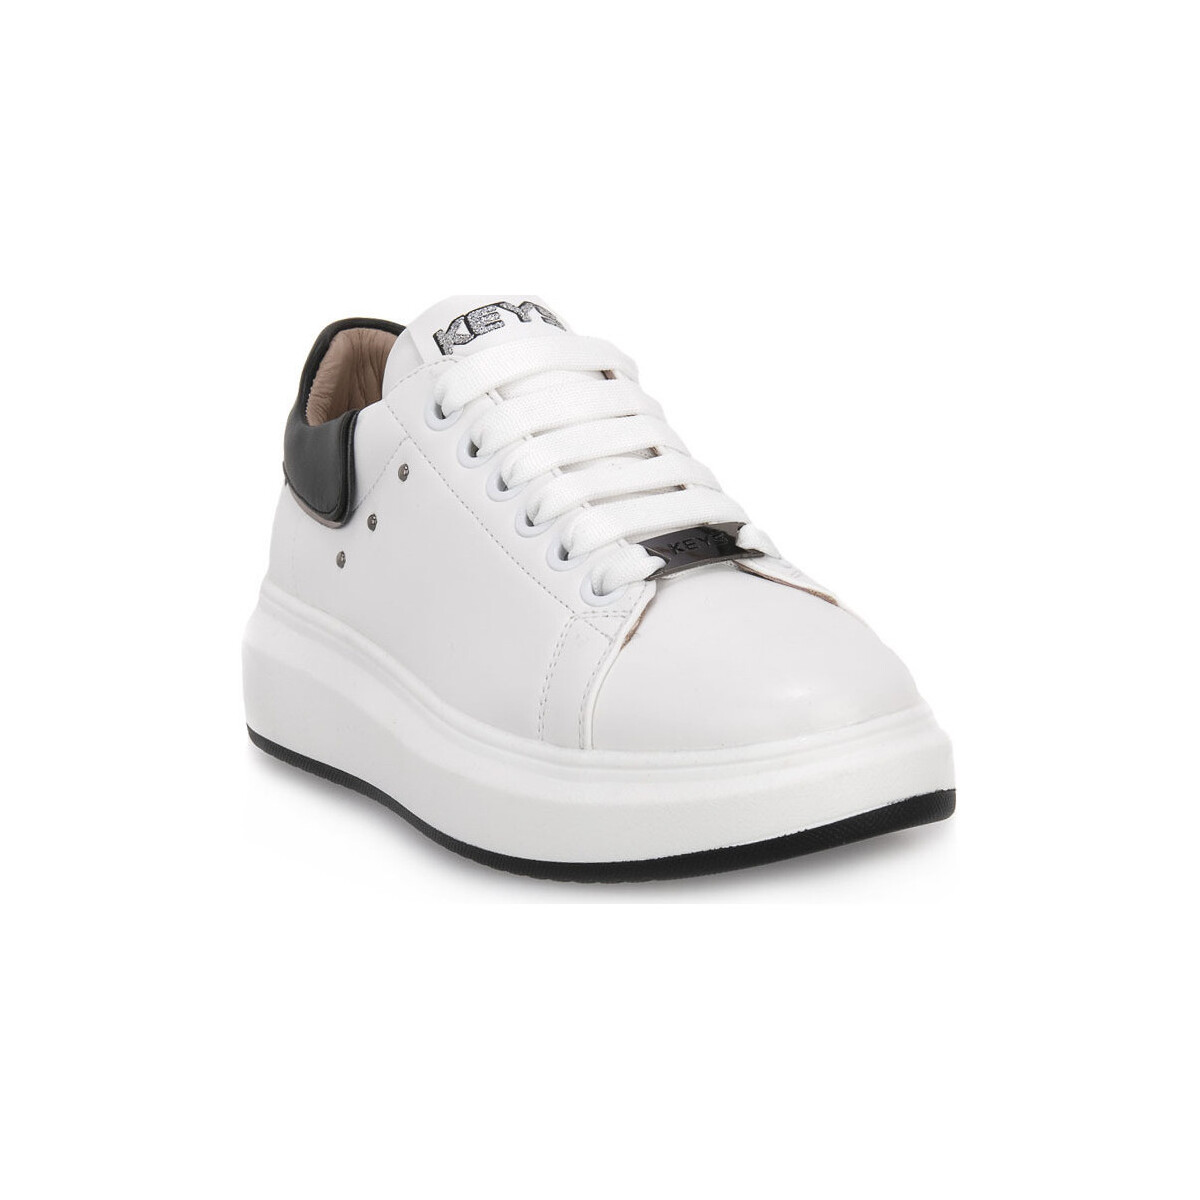 Παπούτσια Γυναίκα Sneakers Keys WHITE BLACK Άσπρο